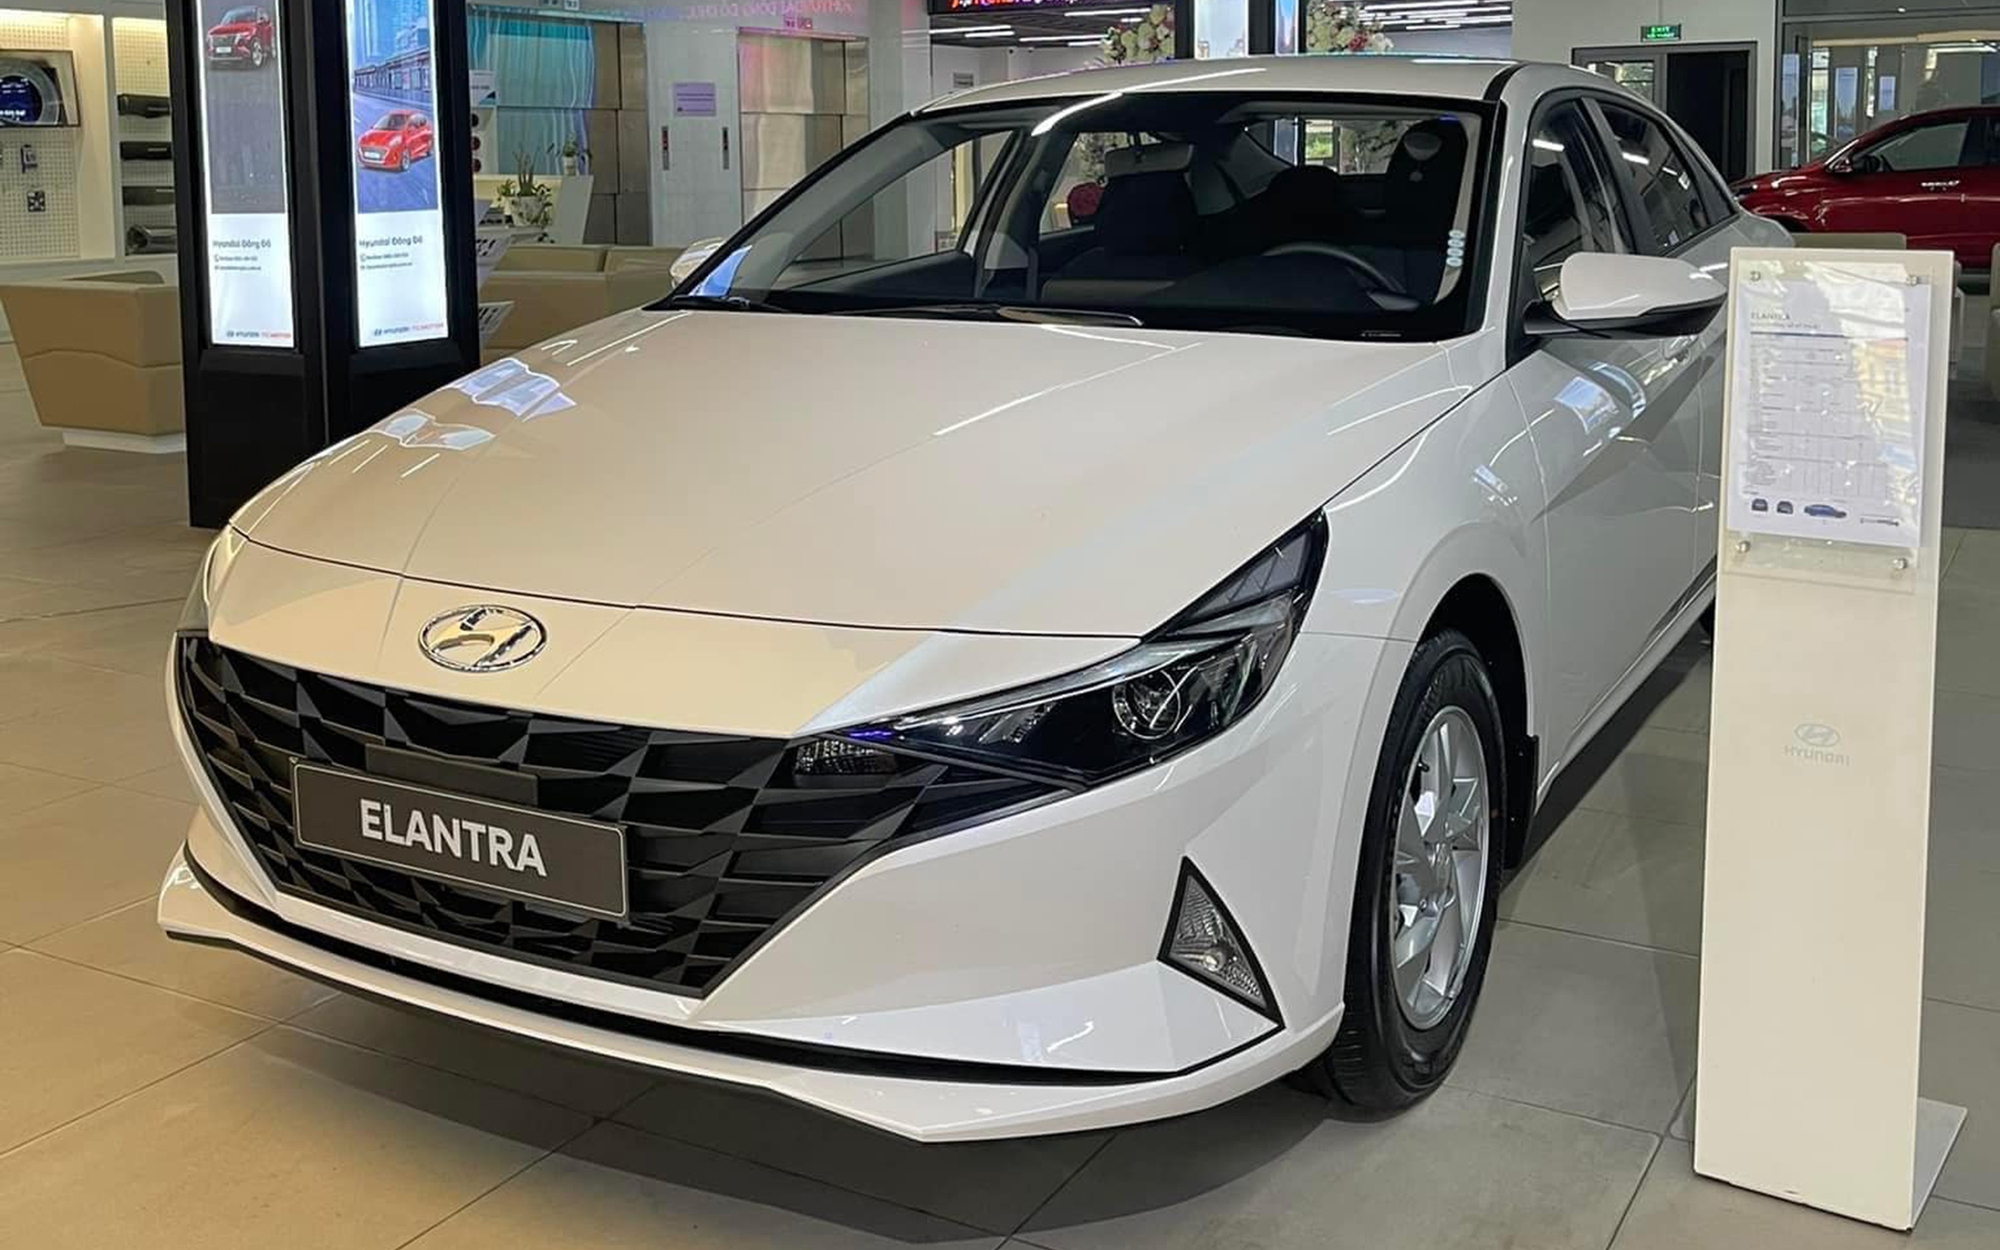 Đại lý xả kho Hyundai Elantra bản Tiêu chuẩn thấp chưa từng thấy: Lần đầu chạm đáy 529 triệu, giá rẻ hơn Accent bản 'full'